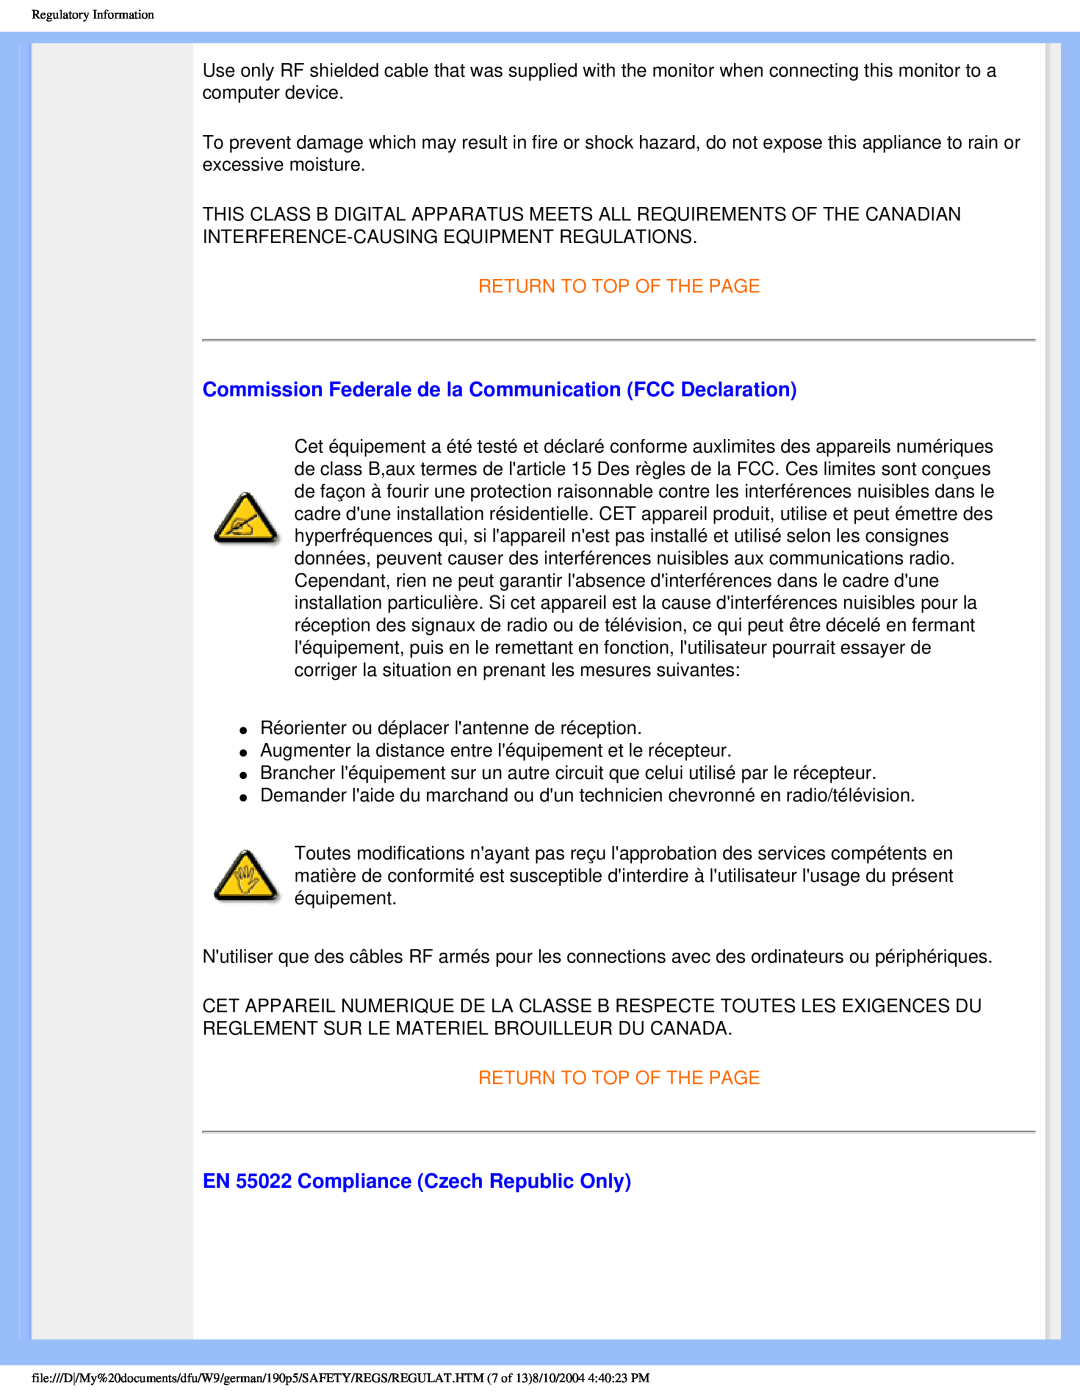 Philips 190P5 user manual Commission Federale de la Communication FCC Declaration, EN 55022 Compliance Czech Republic Only 